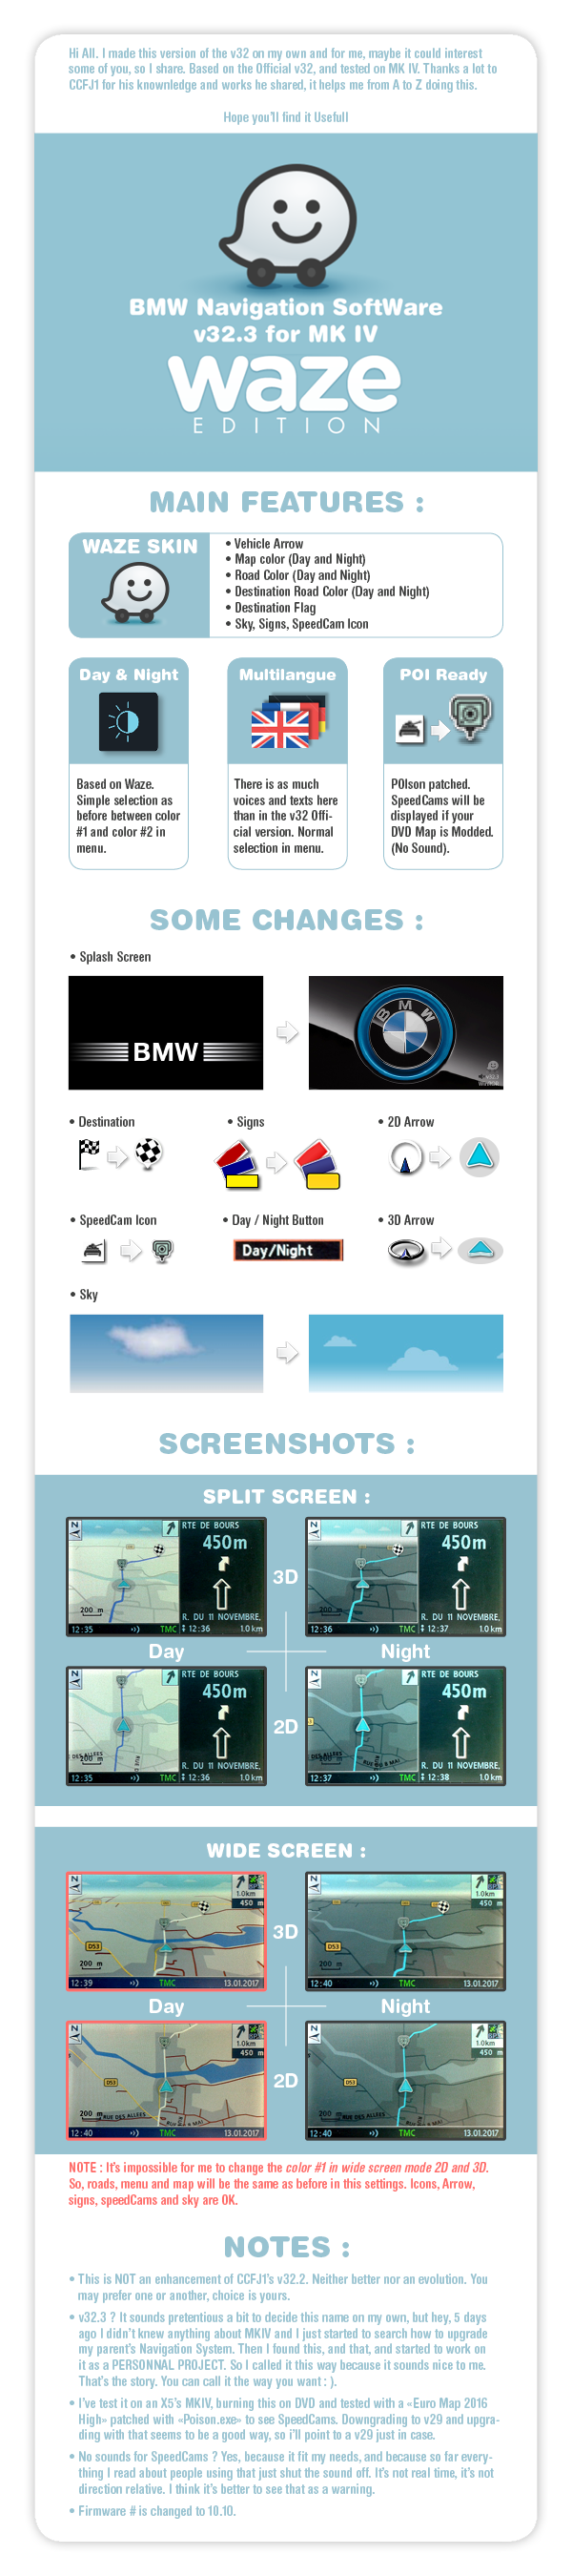 BMW Navigation SoftWare v32.3 v01